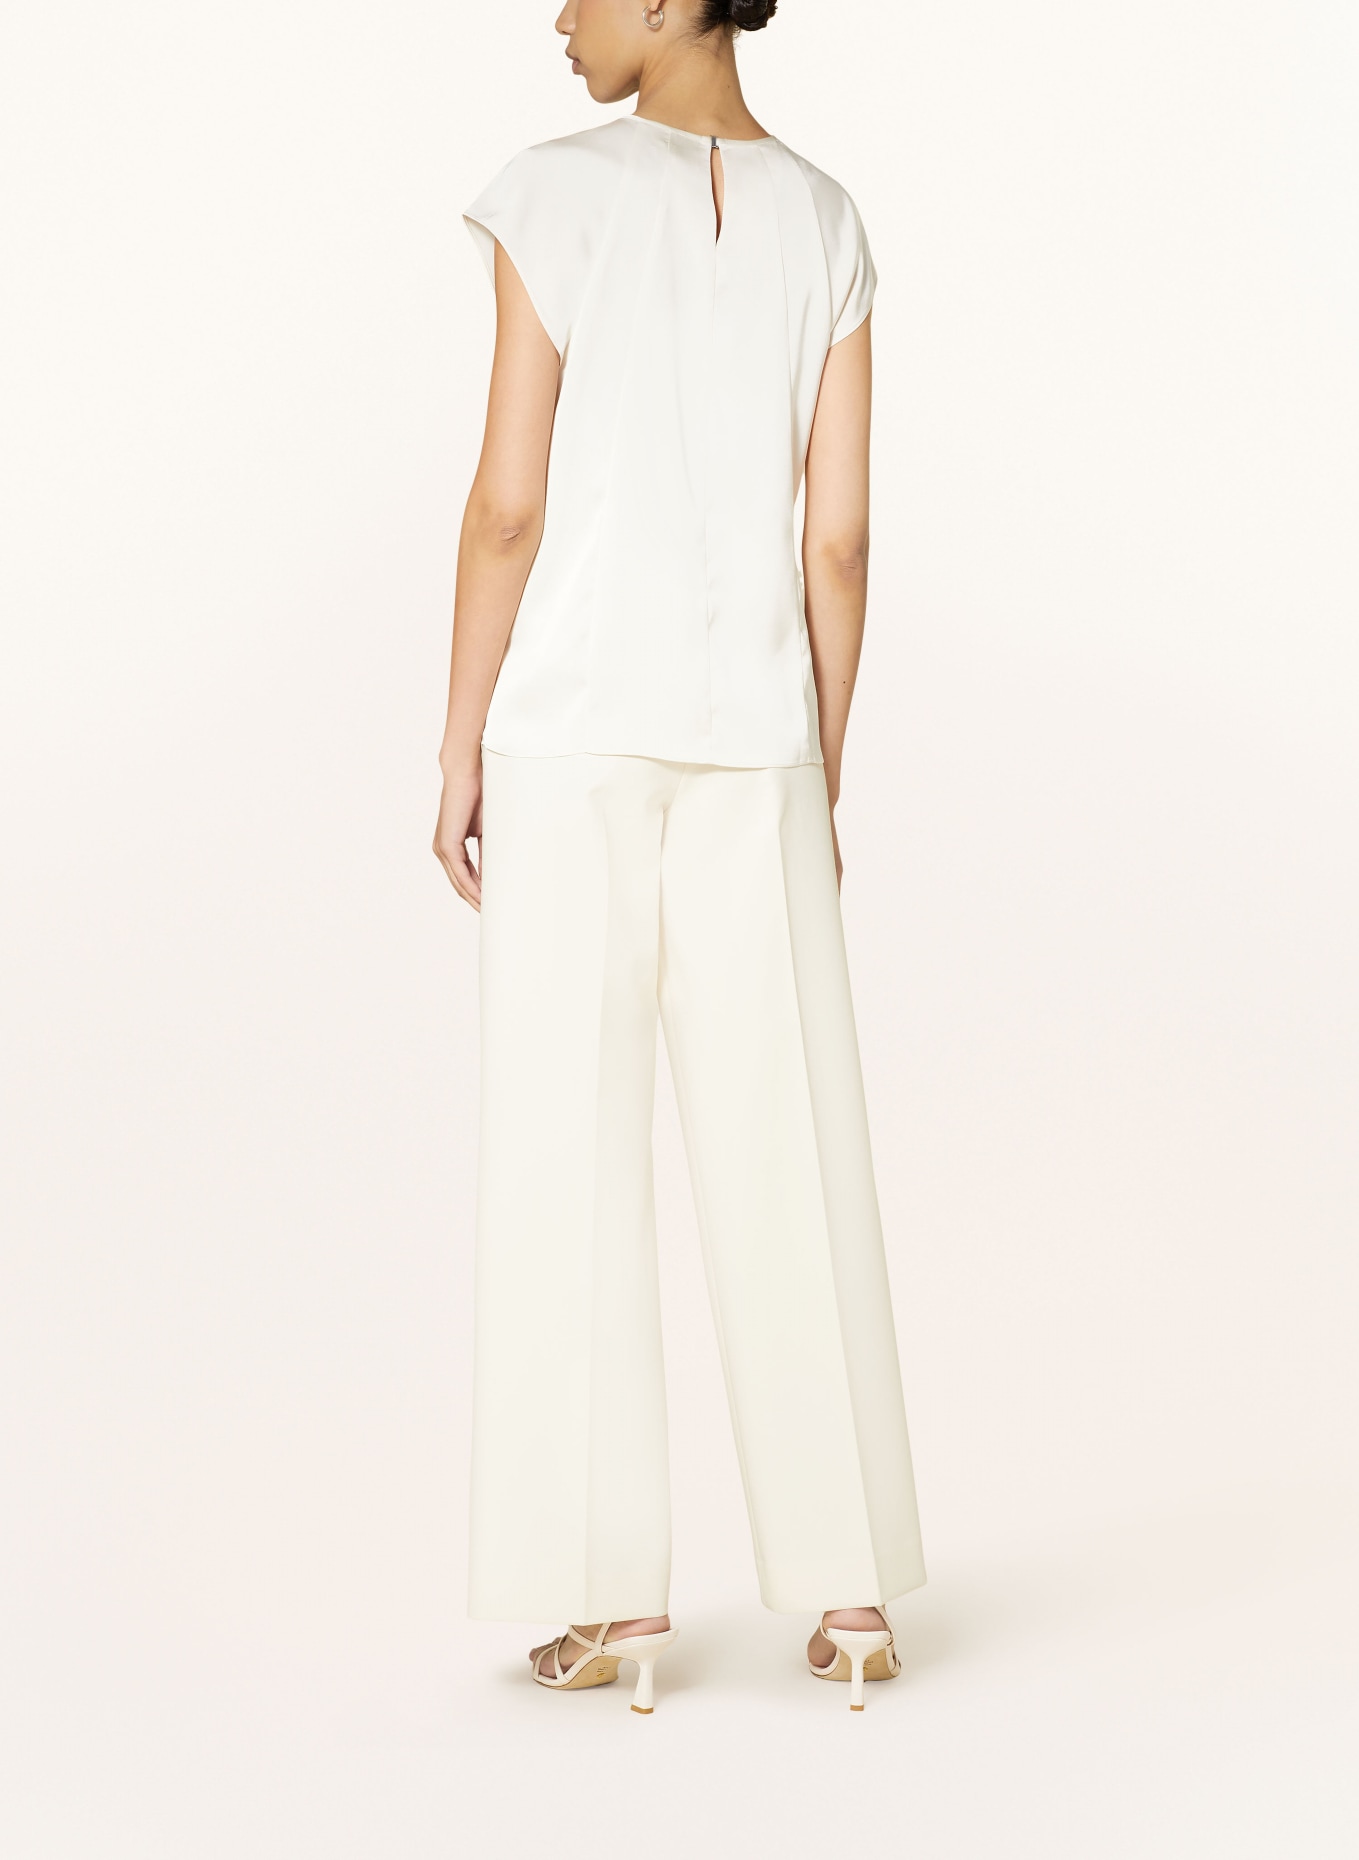 Calvin Klein Blouse top in satin, Color: WHITE/ ECRU (Image 3)